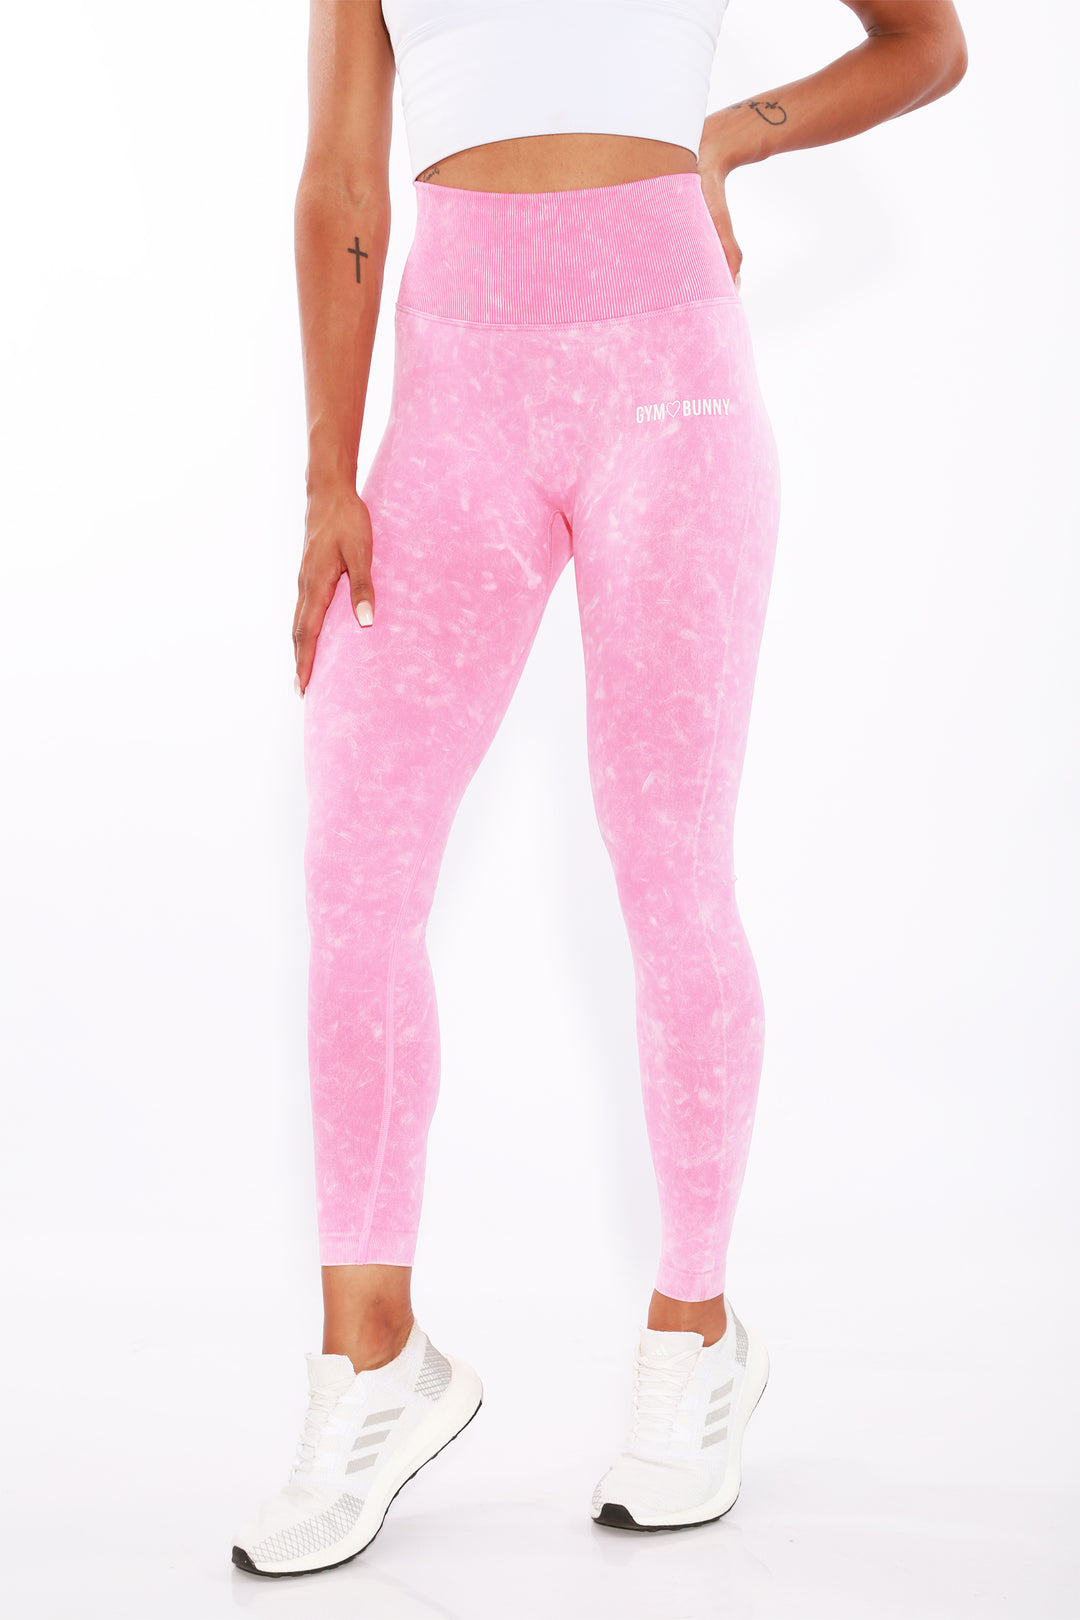 Shapewear Gym Bunny Summer Scrunch leggings -Pink washaos-init aos-animate